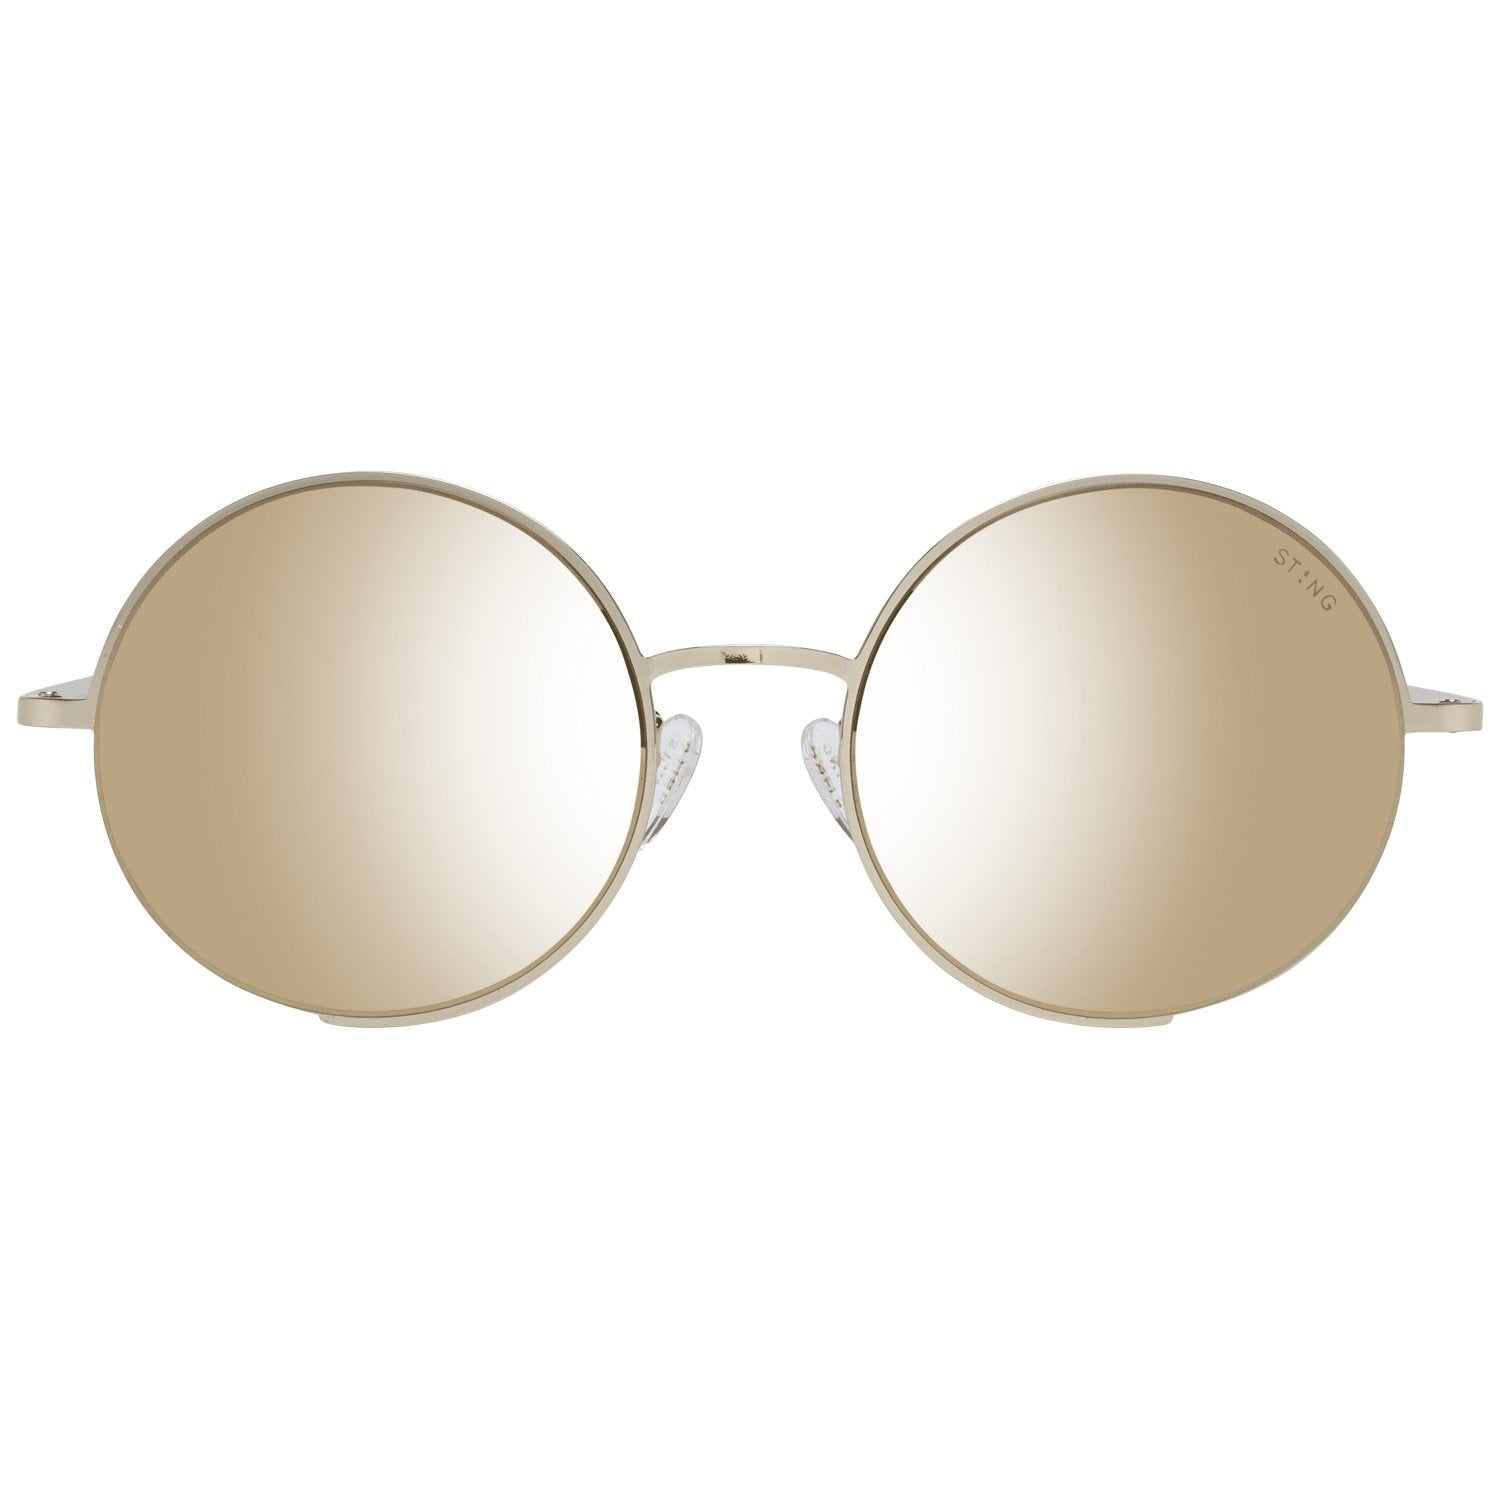 Sting Gold Sunglasses for Woman - Fizigo